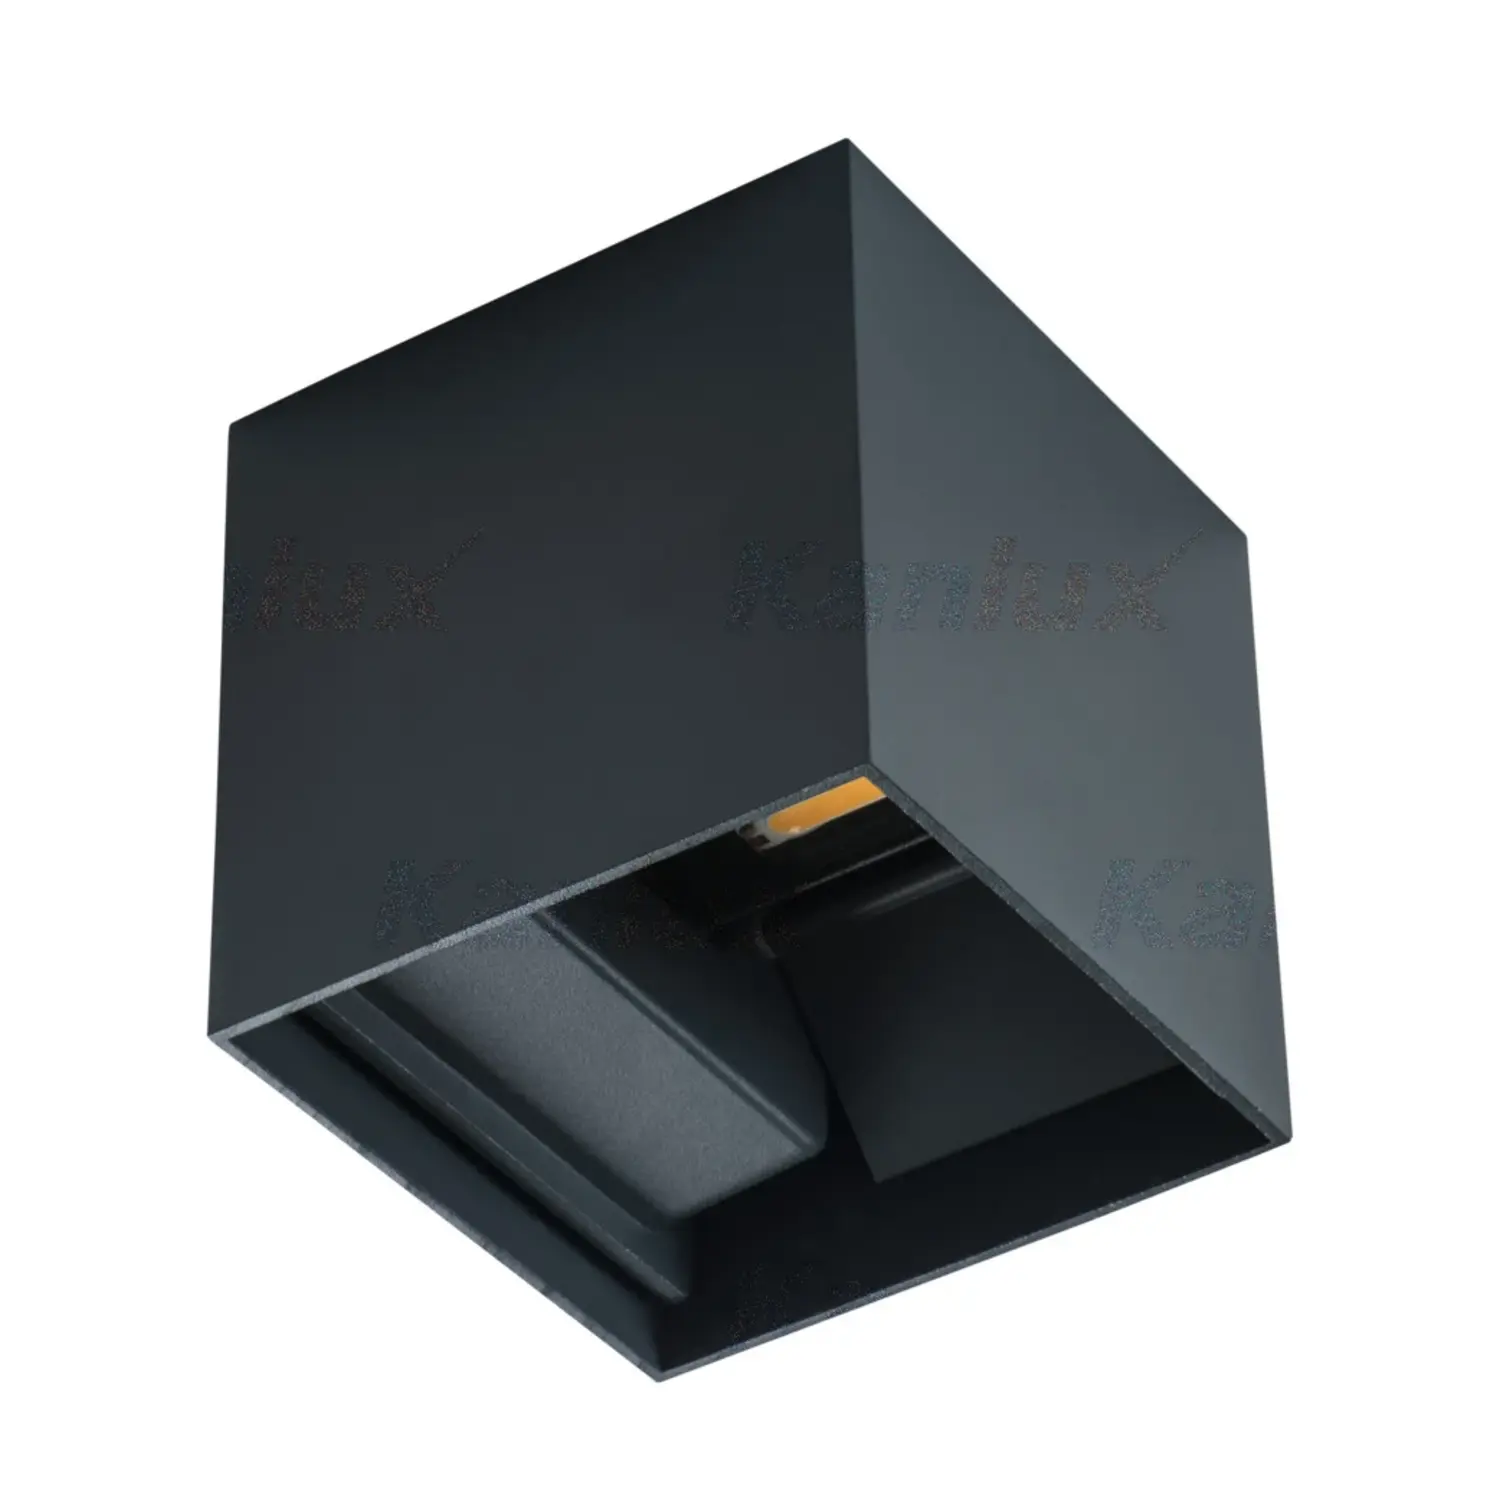 immagine del prodotto plafoniera led decorativo quadrato nero IP54 interno ed esterno CE bianco naturale 7 watt 30000 ore 220-240 volt kan 28990